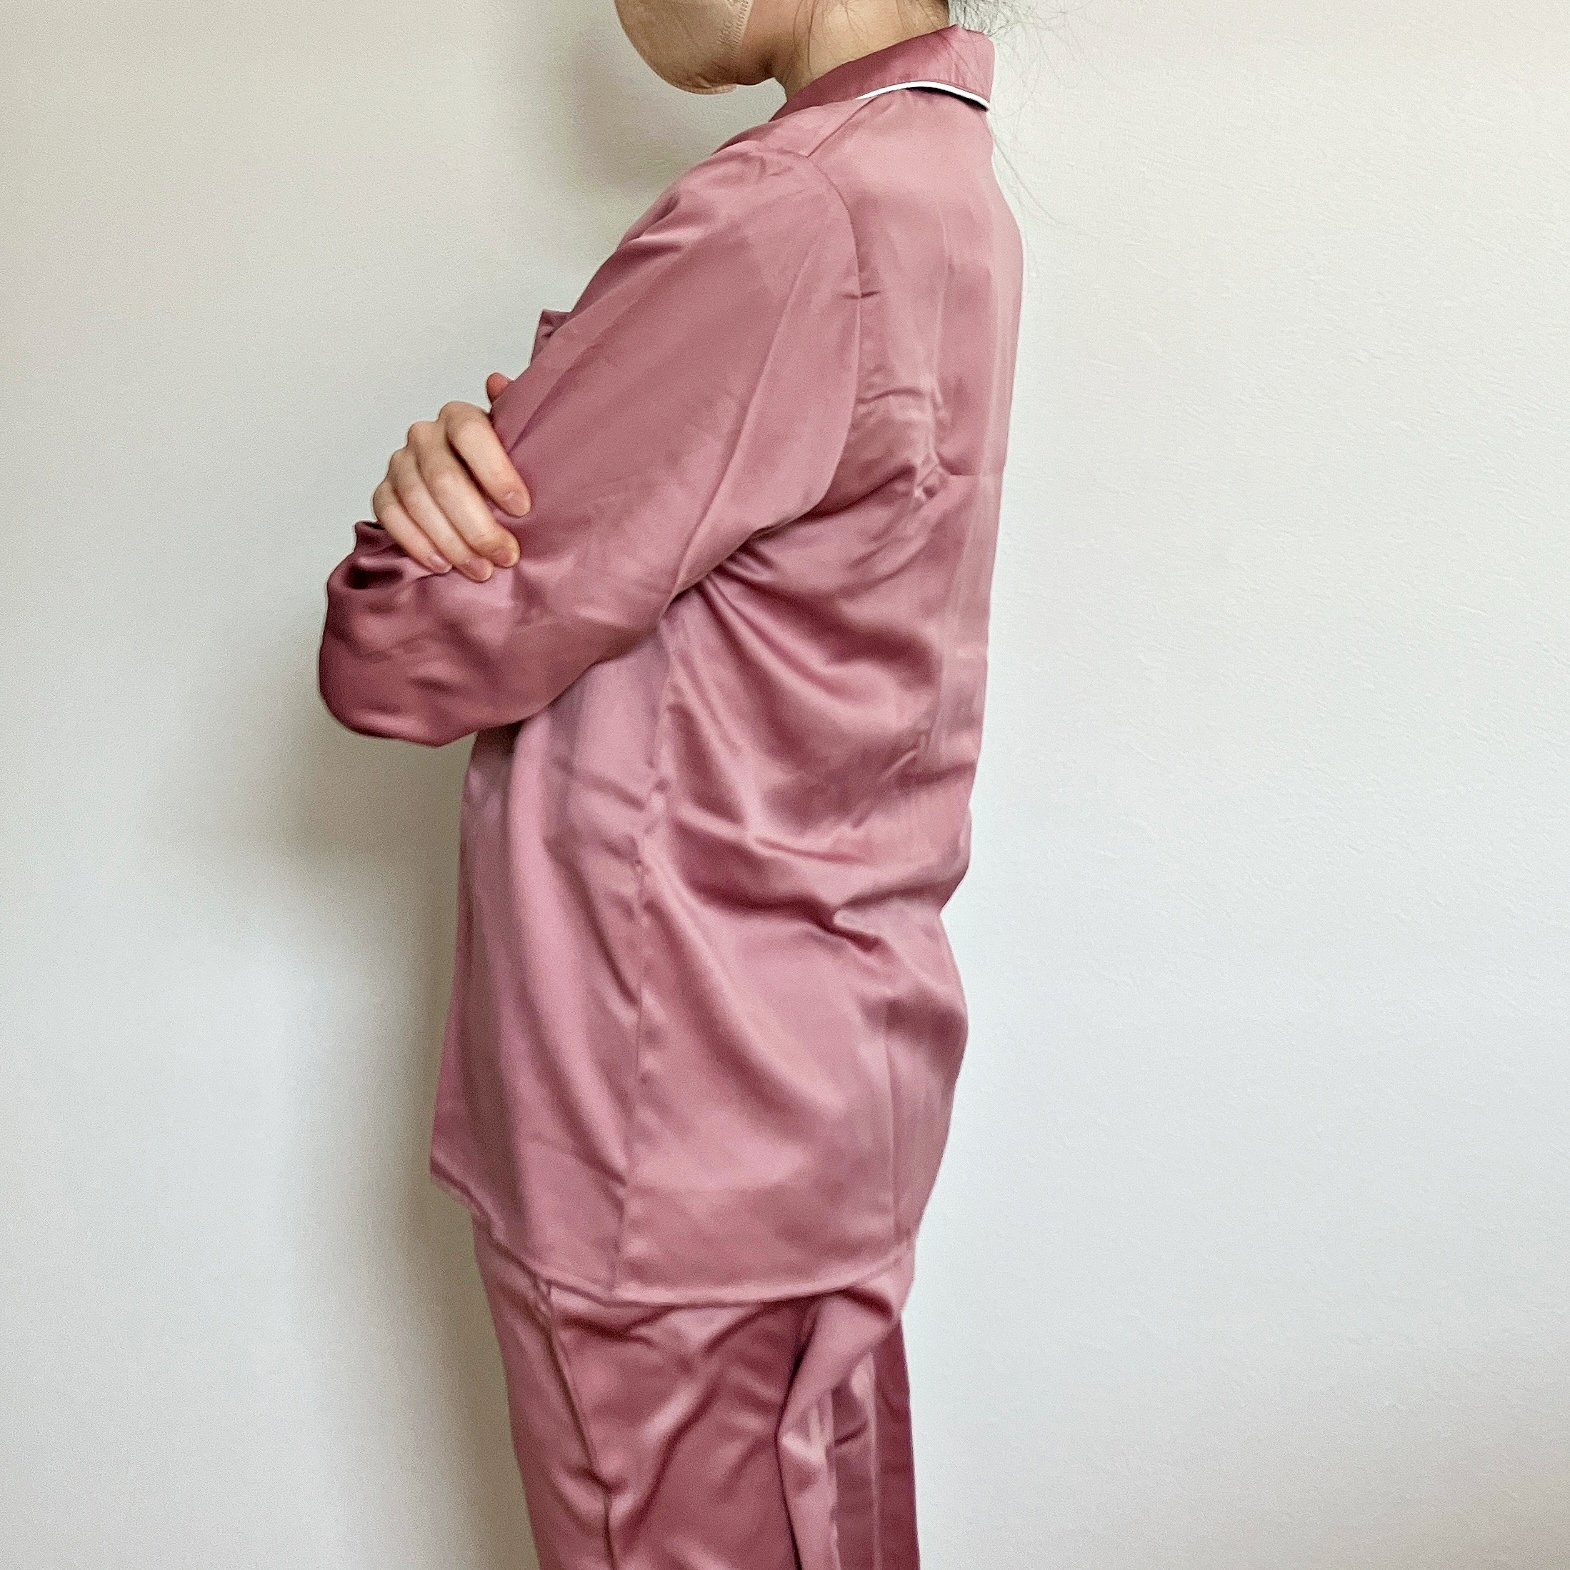 GU（ジーユー）のおしゃれルームウェア「サテンパジャマ（長袖＆ロングパンツ）」